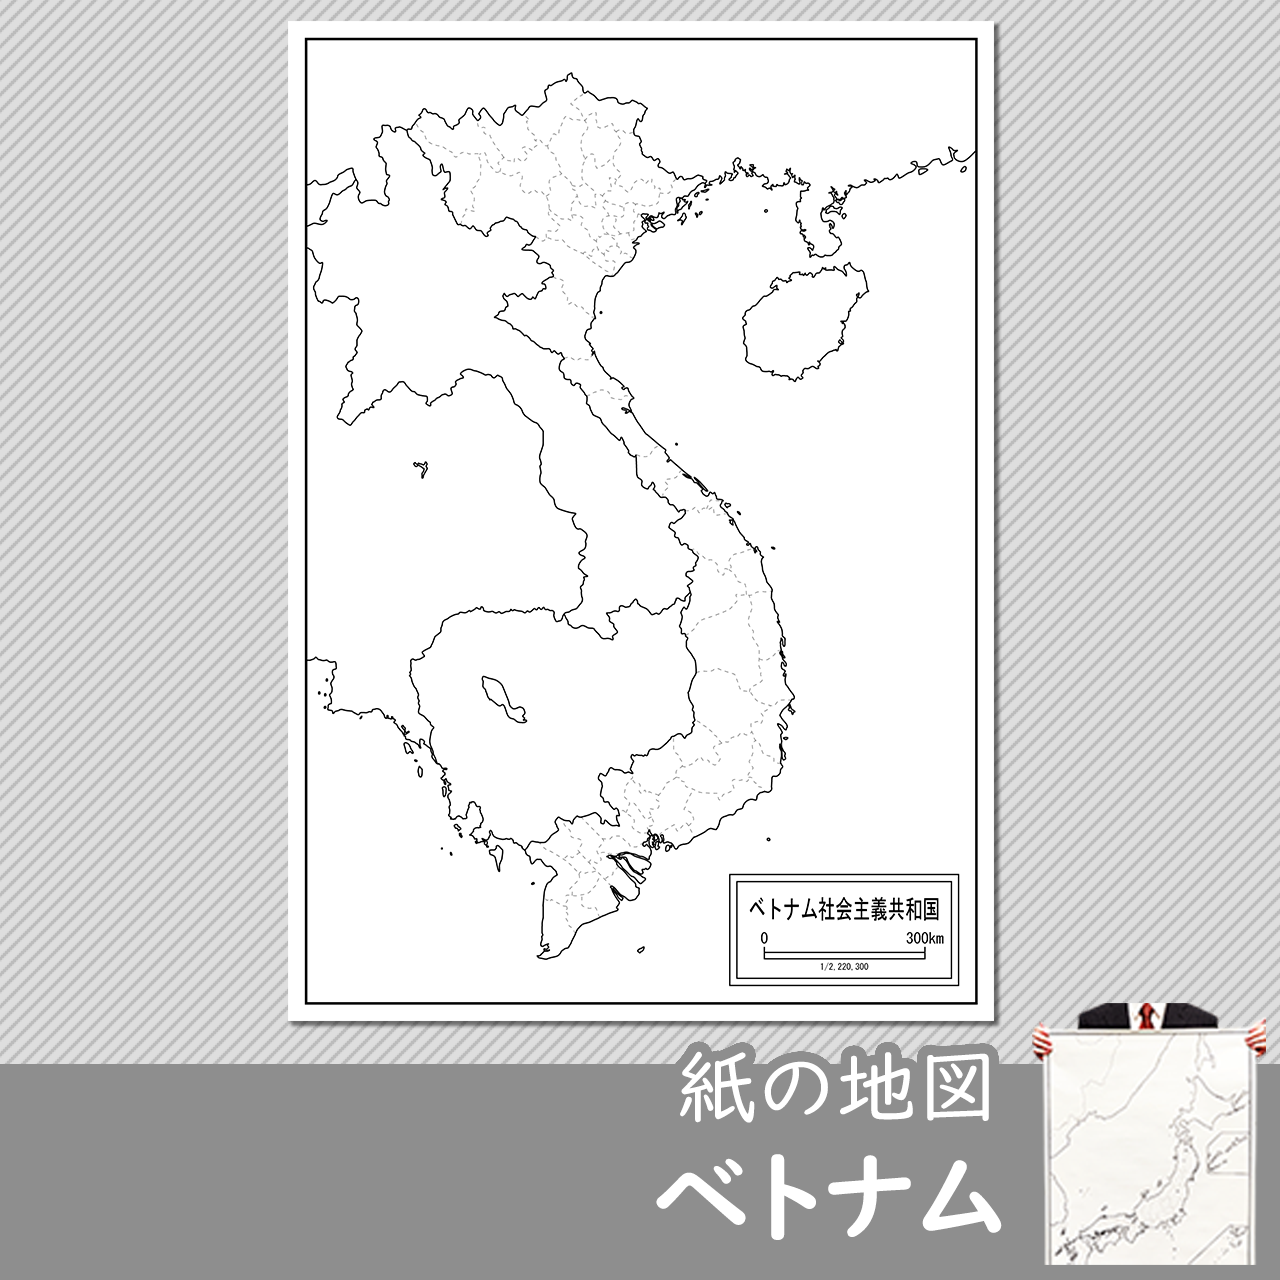 ベトナムの紙の白地図のサムネイル